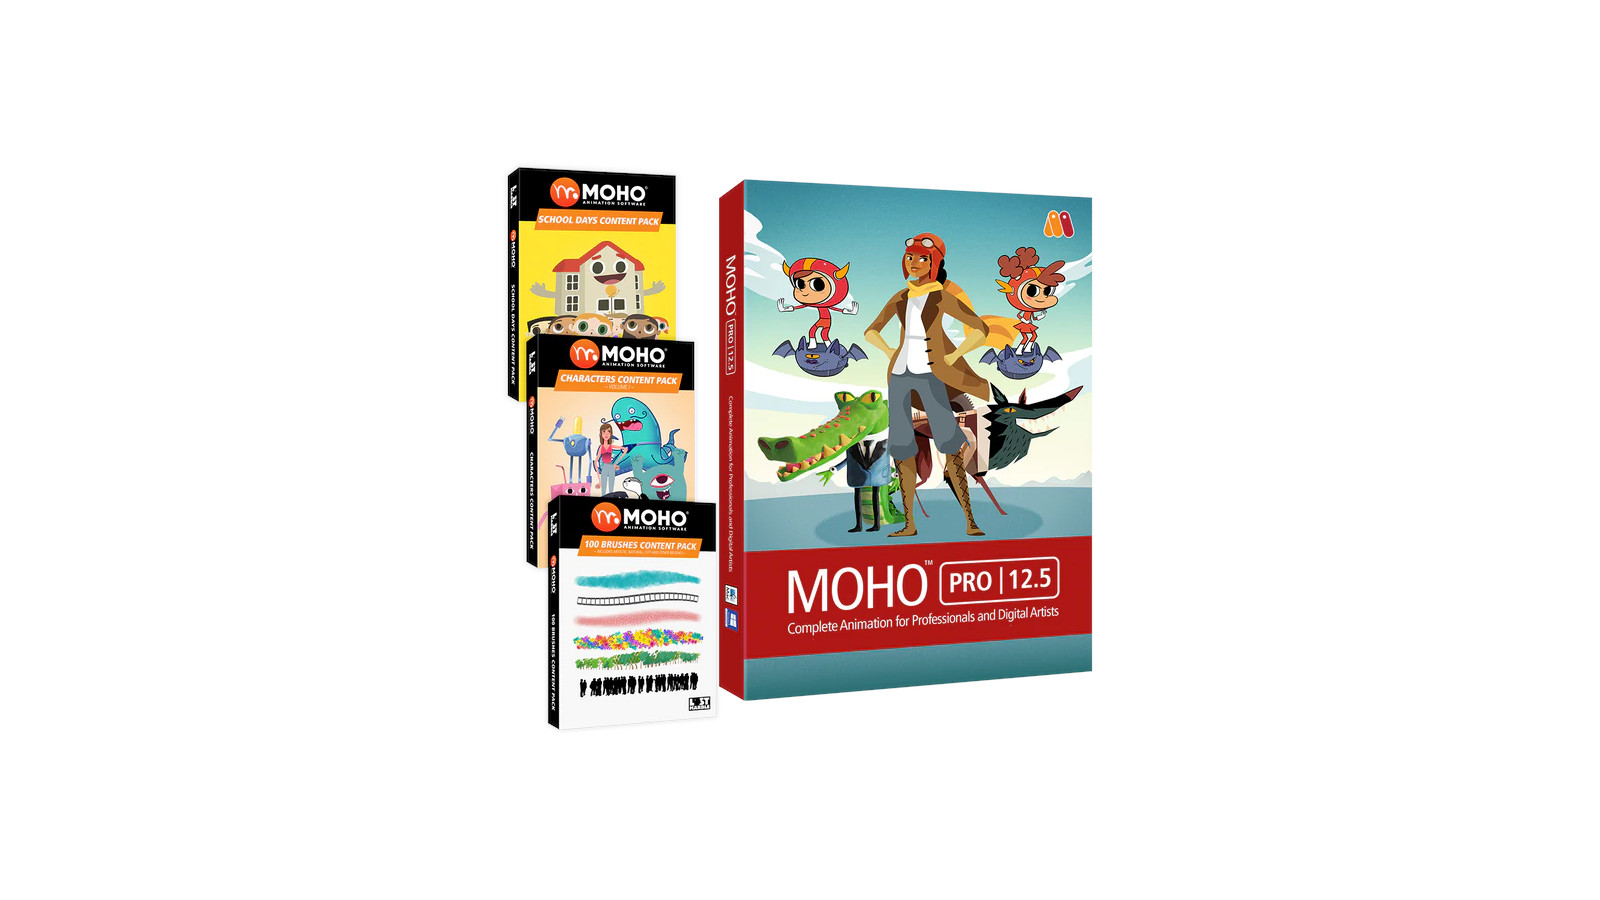 MOHO PRO 12.5 BUNDLE PC/MAC CD Key 386.84 $